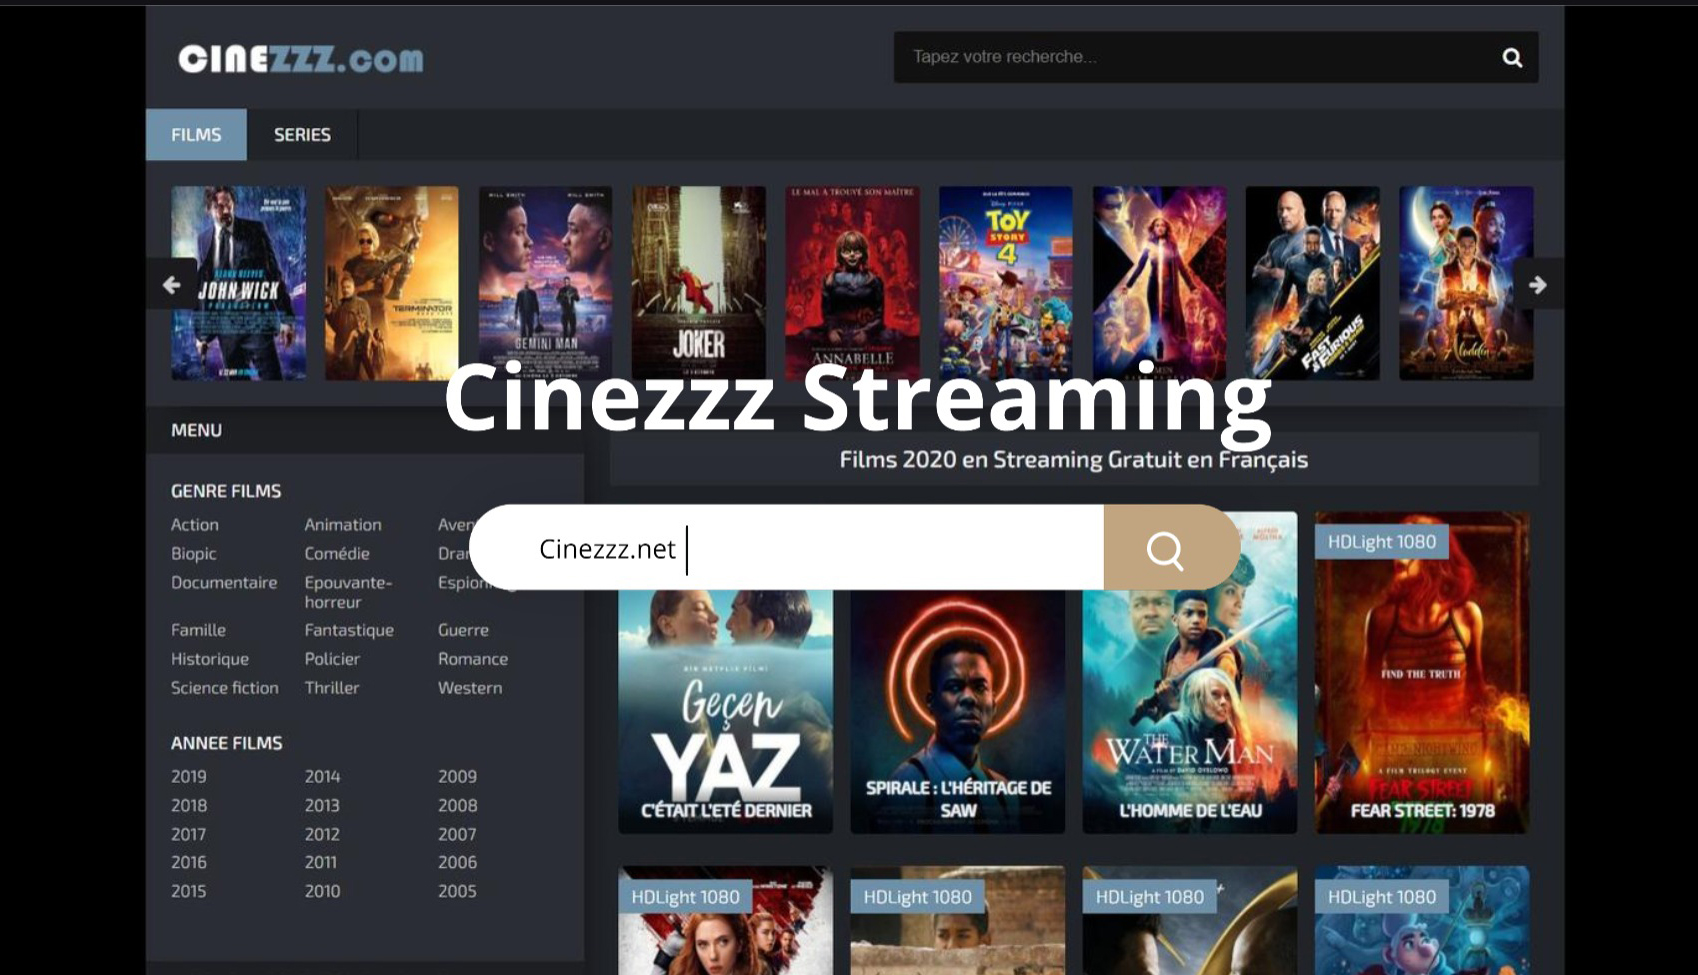 Cinezzz. Free Streaming կայքը փոխում է հասցեն